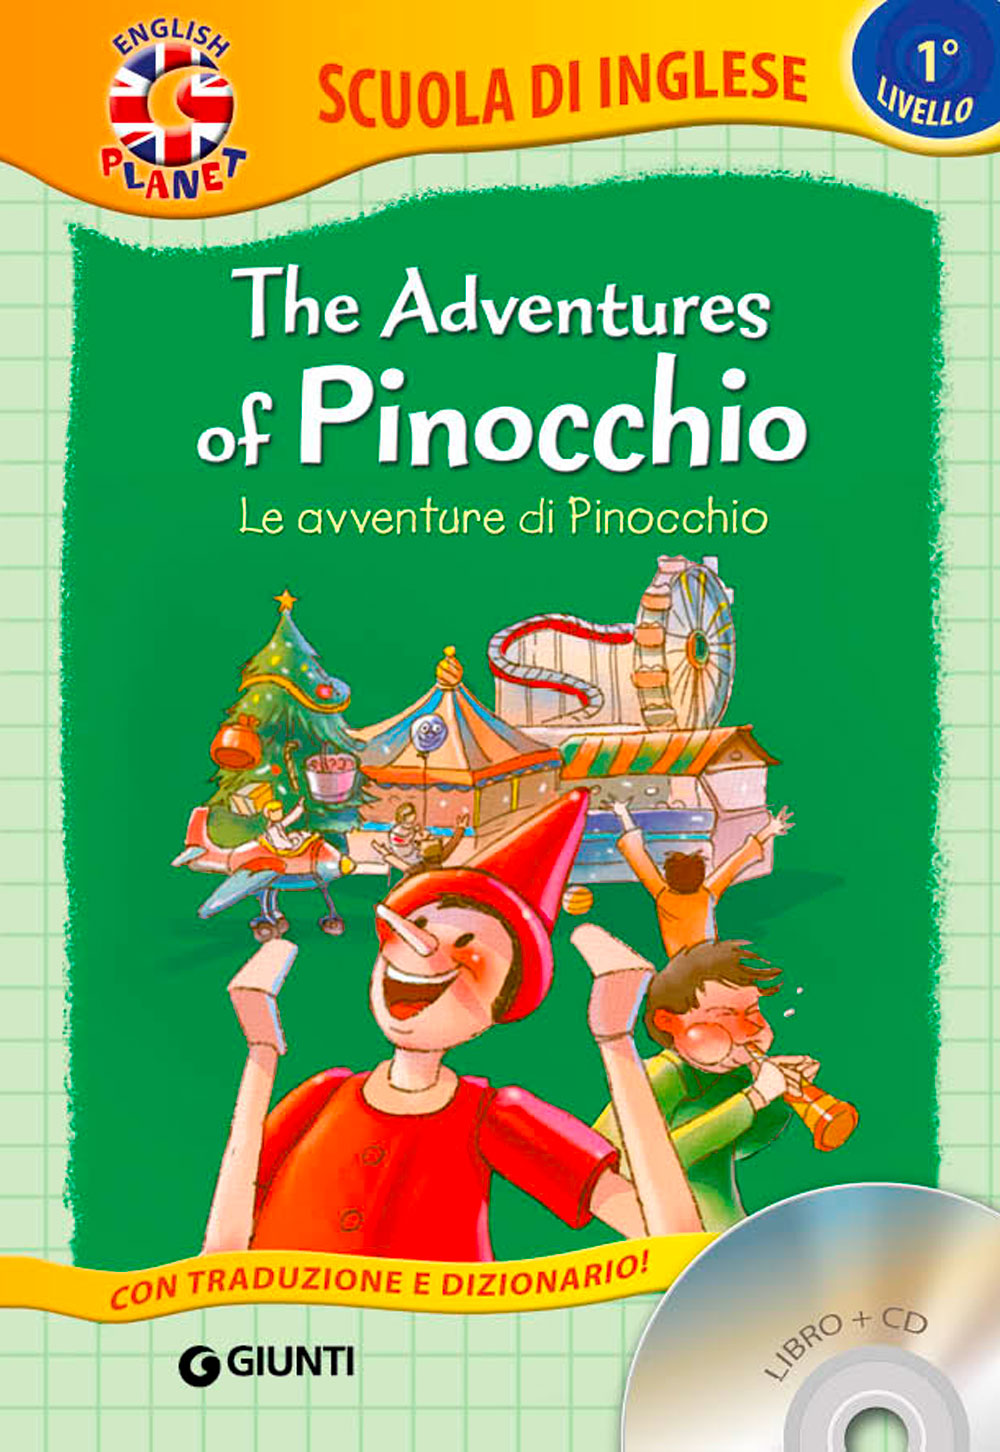 The adventures of Pinocchio + CD. Le avventure di Pinocchio - Con traduzione e dizionario!